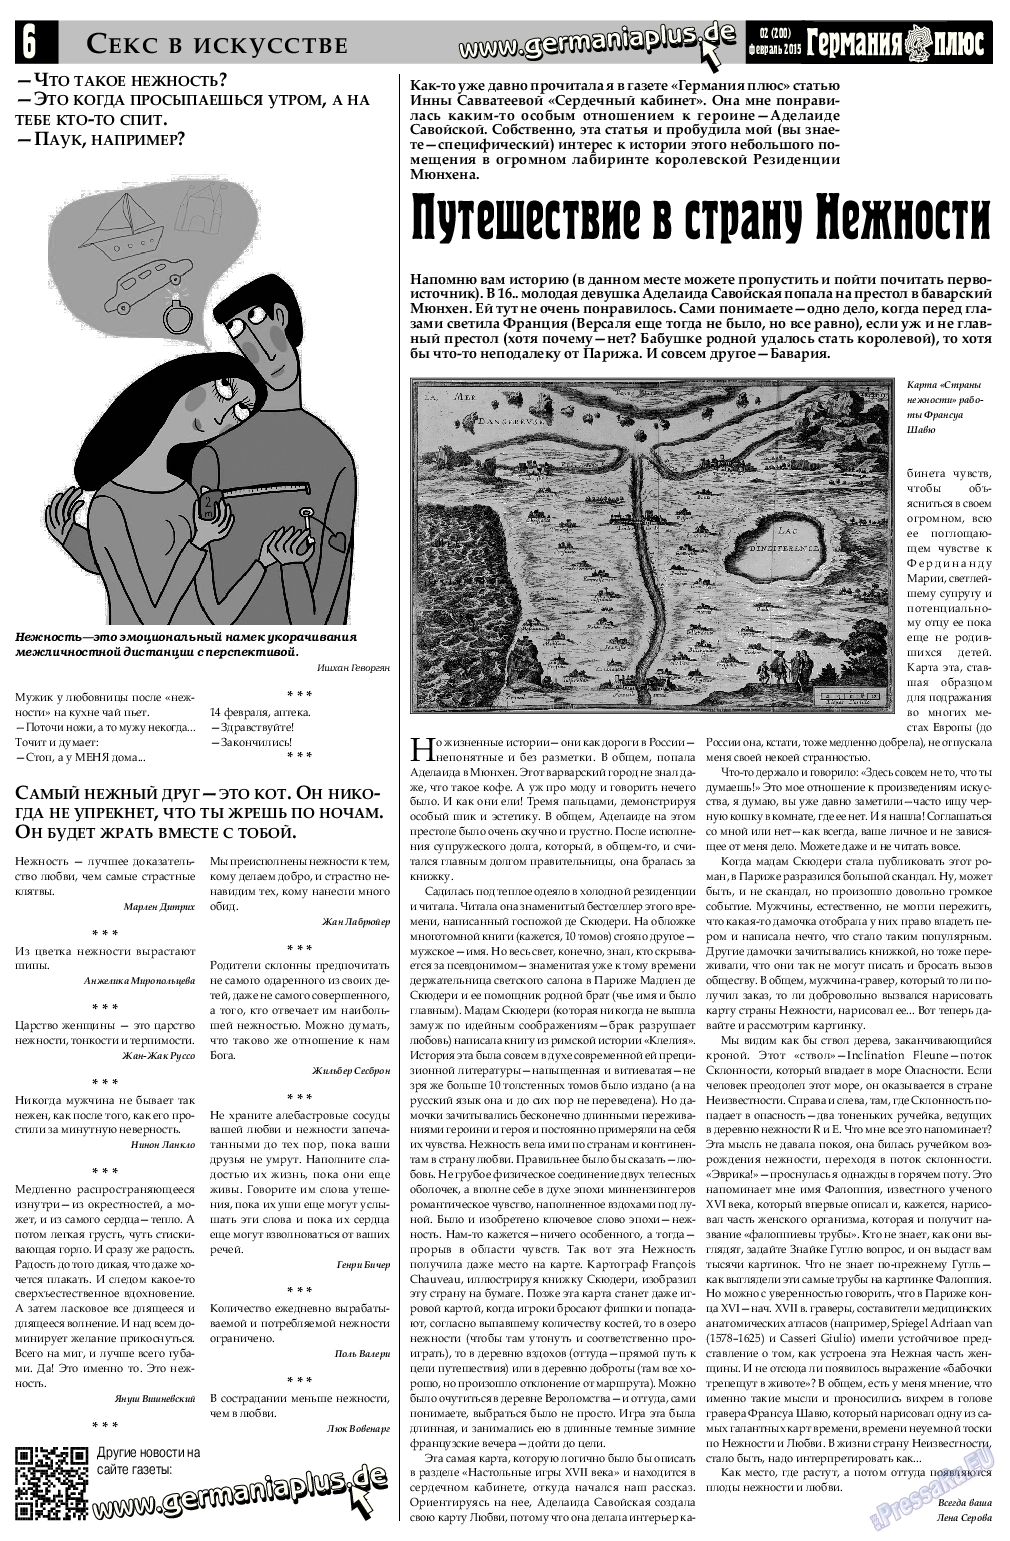 Германия плюс, газета. 2015 №2 стр.6